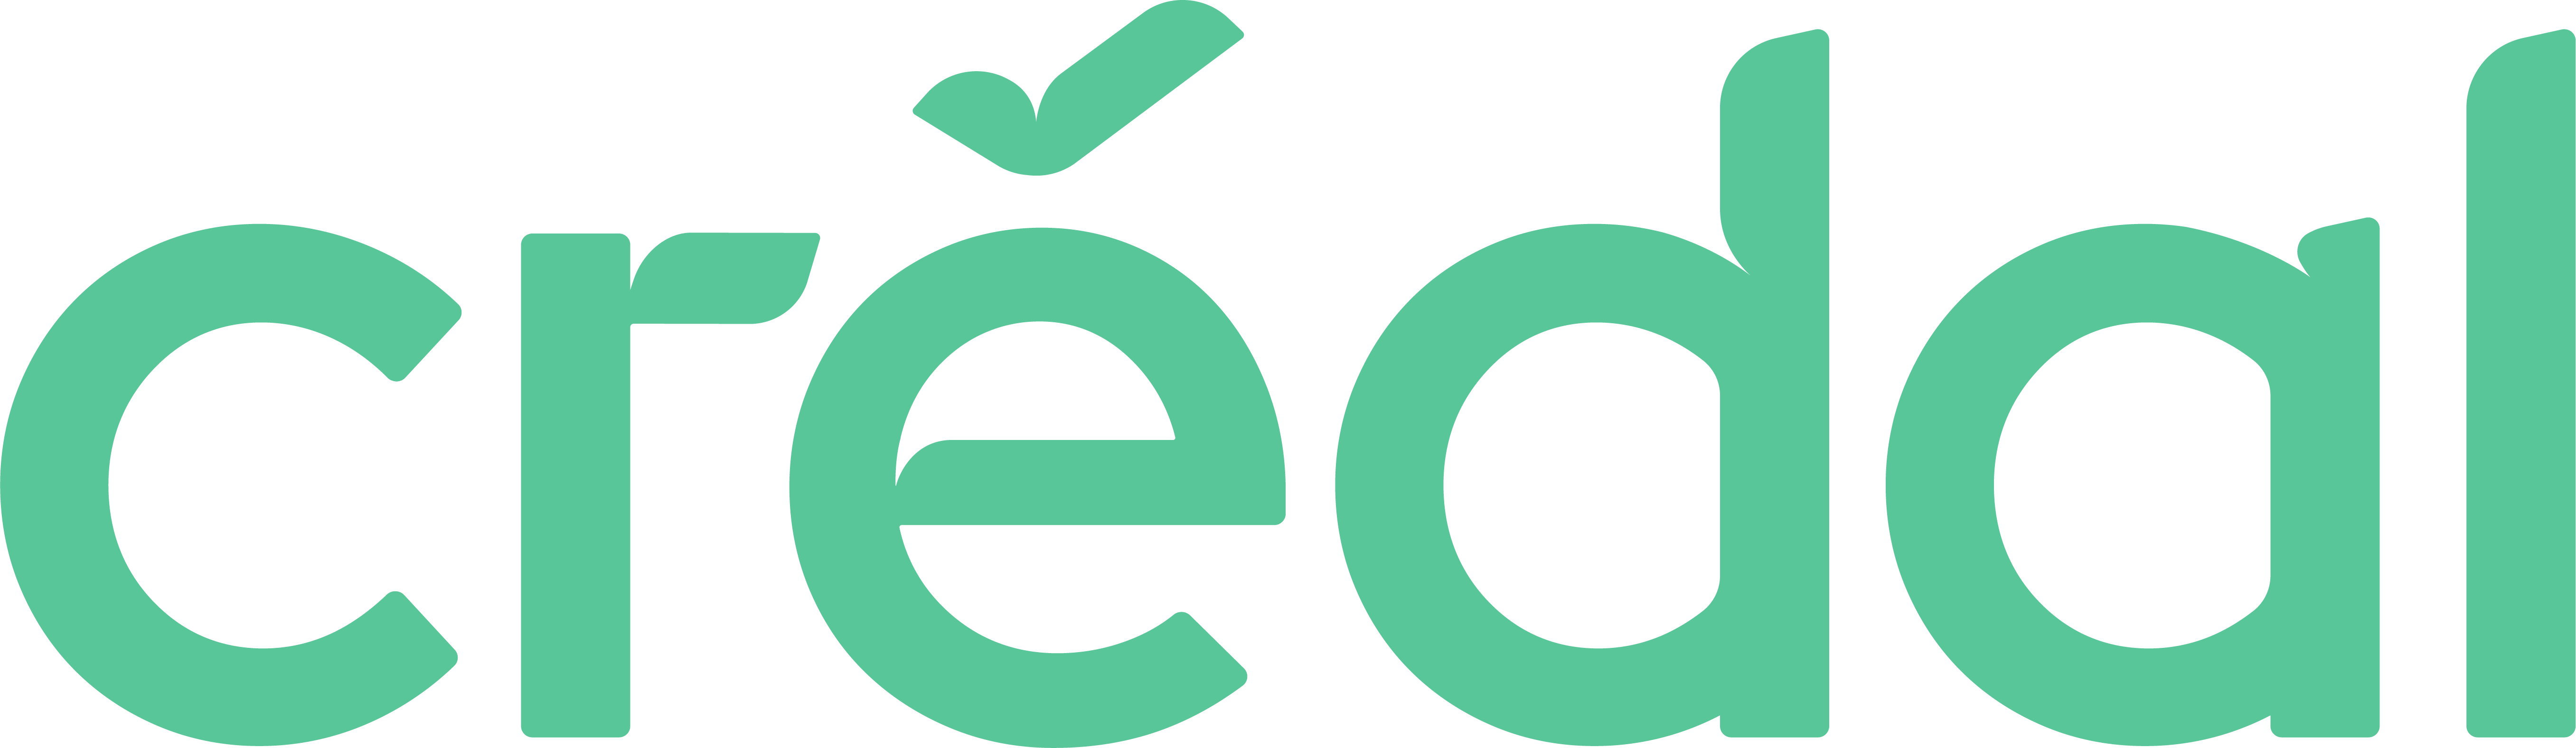 logo_credal_green